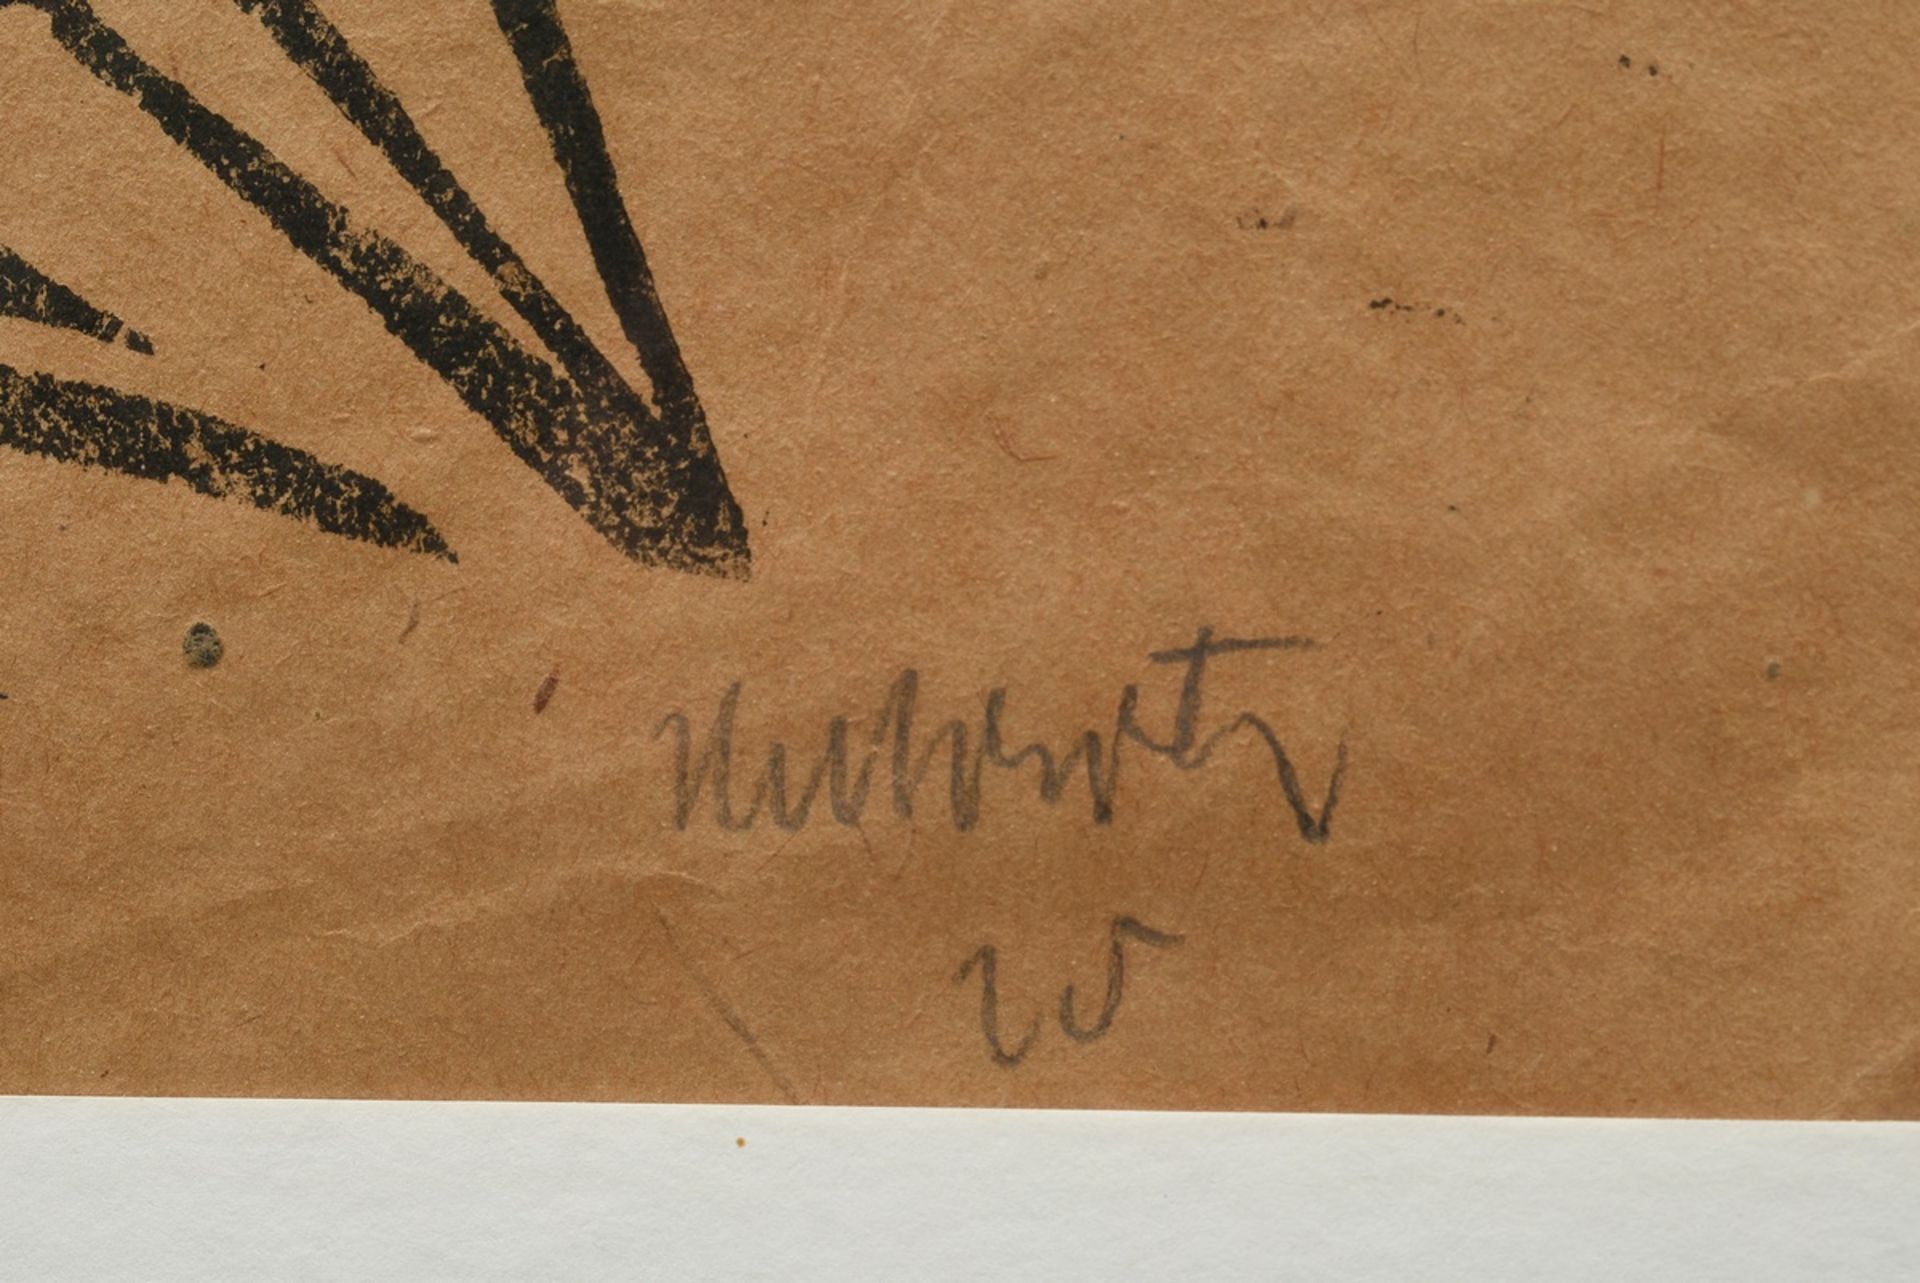 Unbekannter Künstler des frühen 20.Jh. (Hubertz?) "Bogenschütze" 1920 oder 1925, wohl Linolschnitt, - Bild 3 aus 3